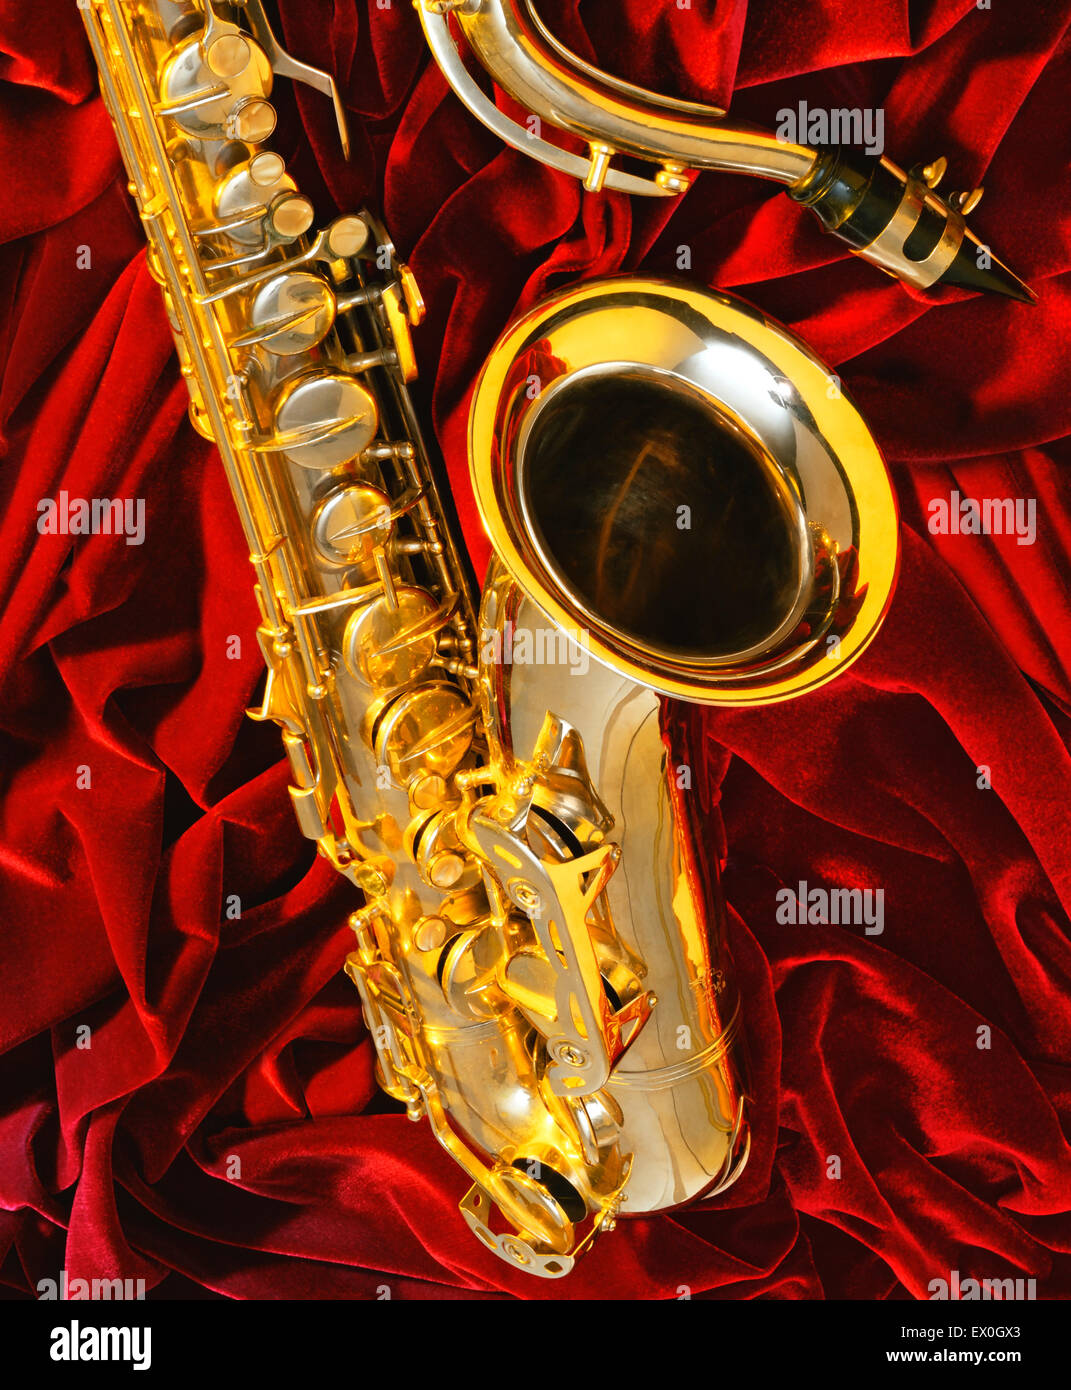 Golden saxophone on a red velvet Stock Photo